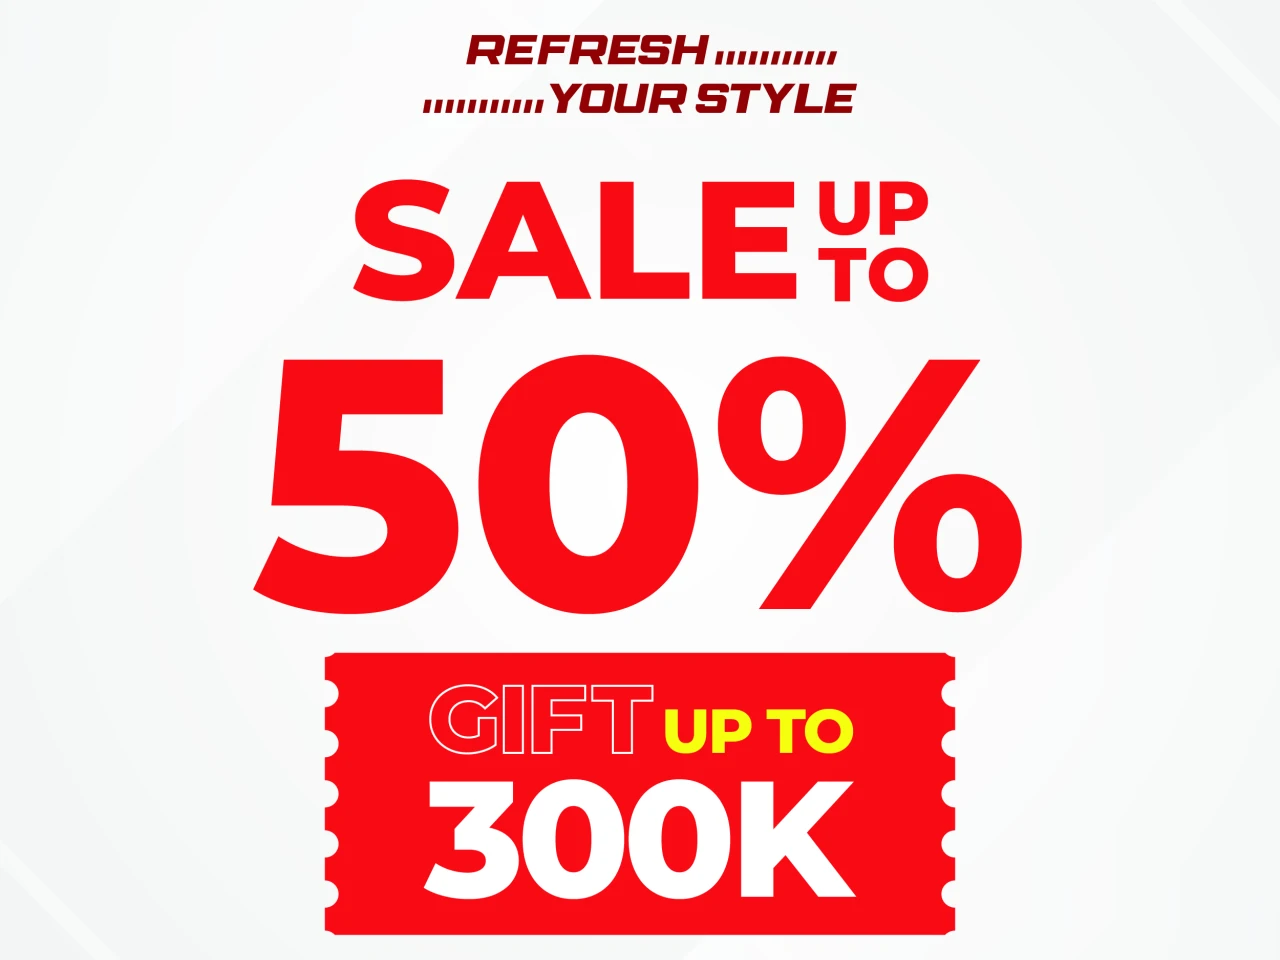 Li-ning refresh your sale giảm tới 50%